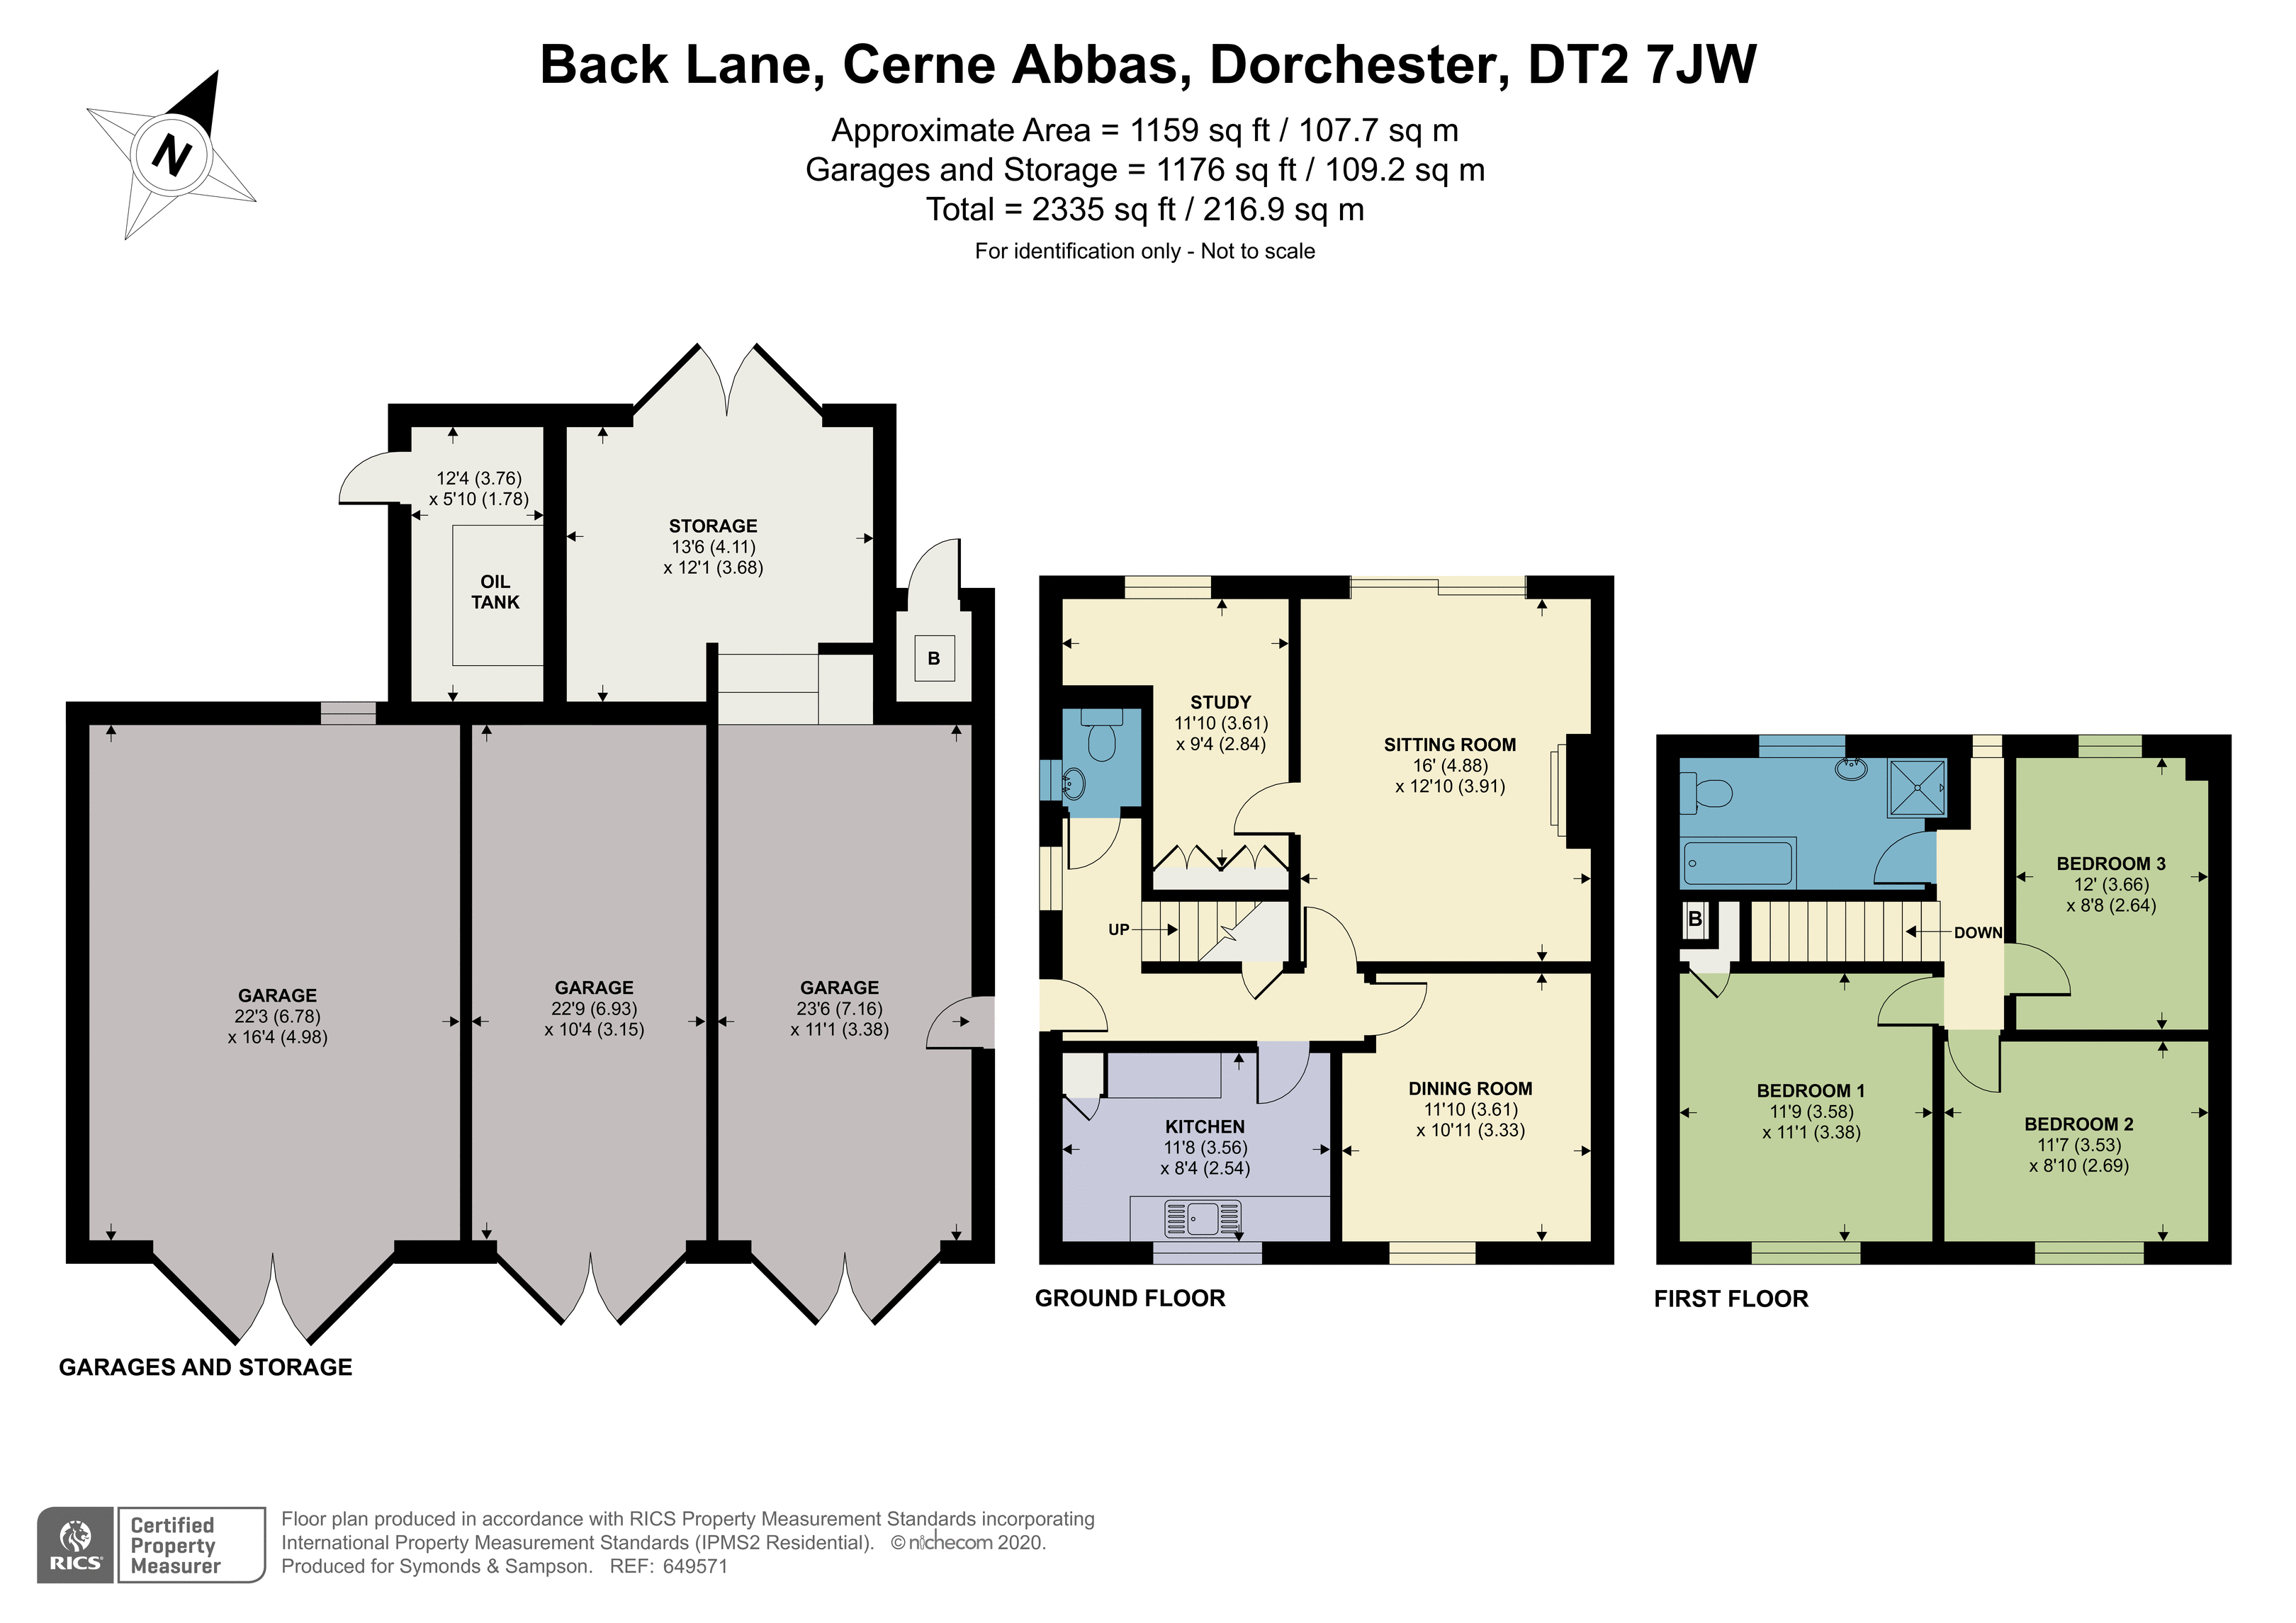 Floorplan - Back Lane, Cerne Abbas, Dorchester, DT2 7JW